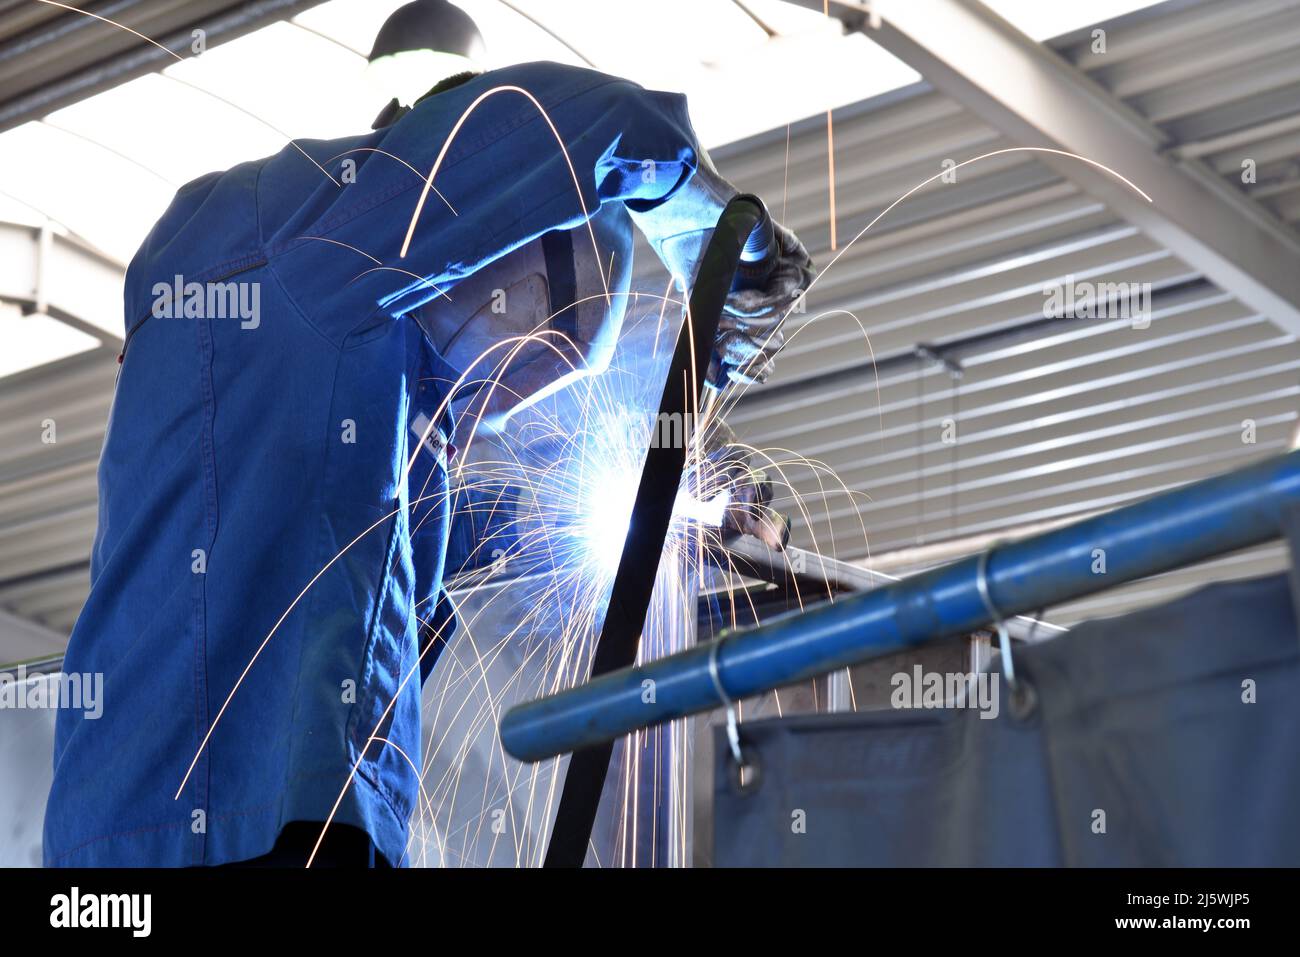 Schweißer bei der Arbeit in einem Stahlbauunternehmen - Arbeits- und Schutzkleidung Stockfoto